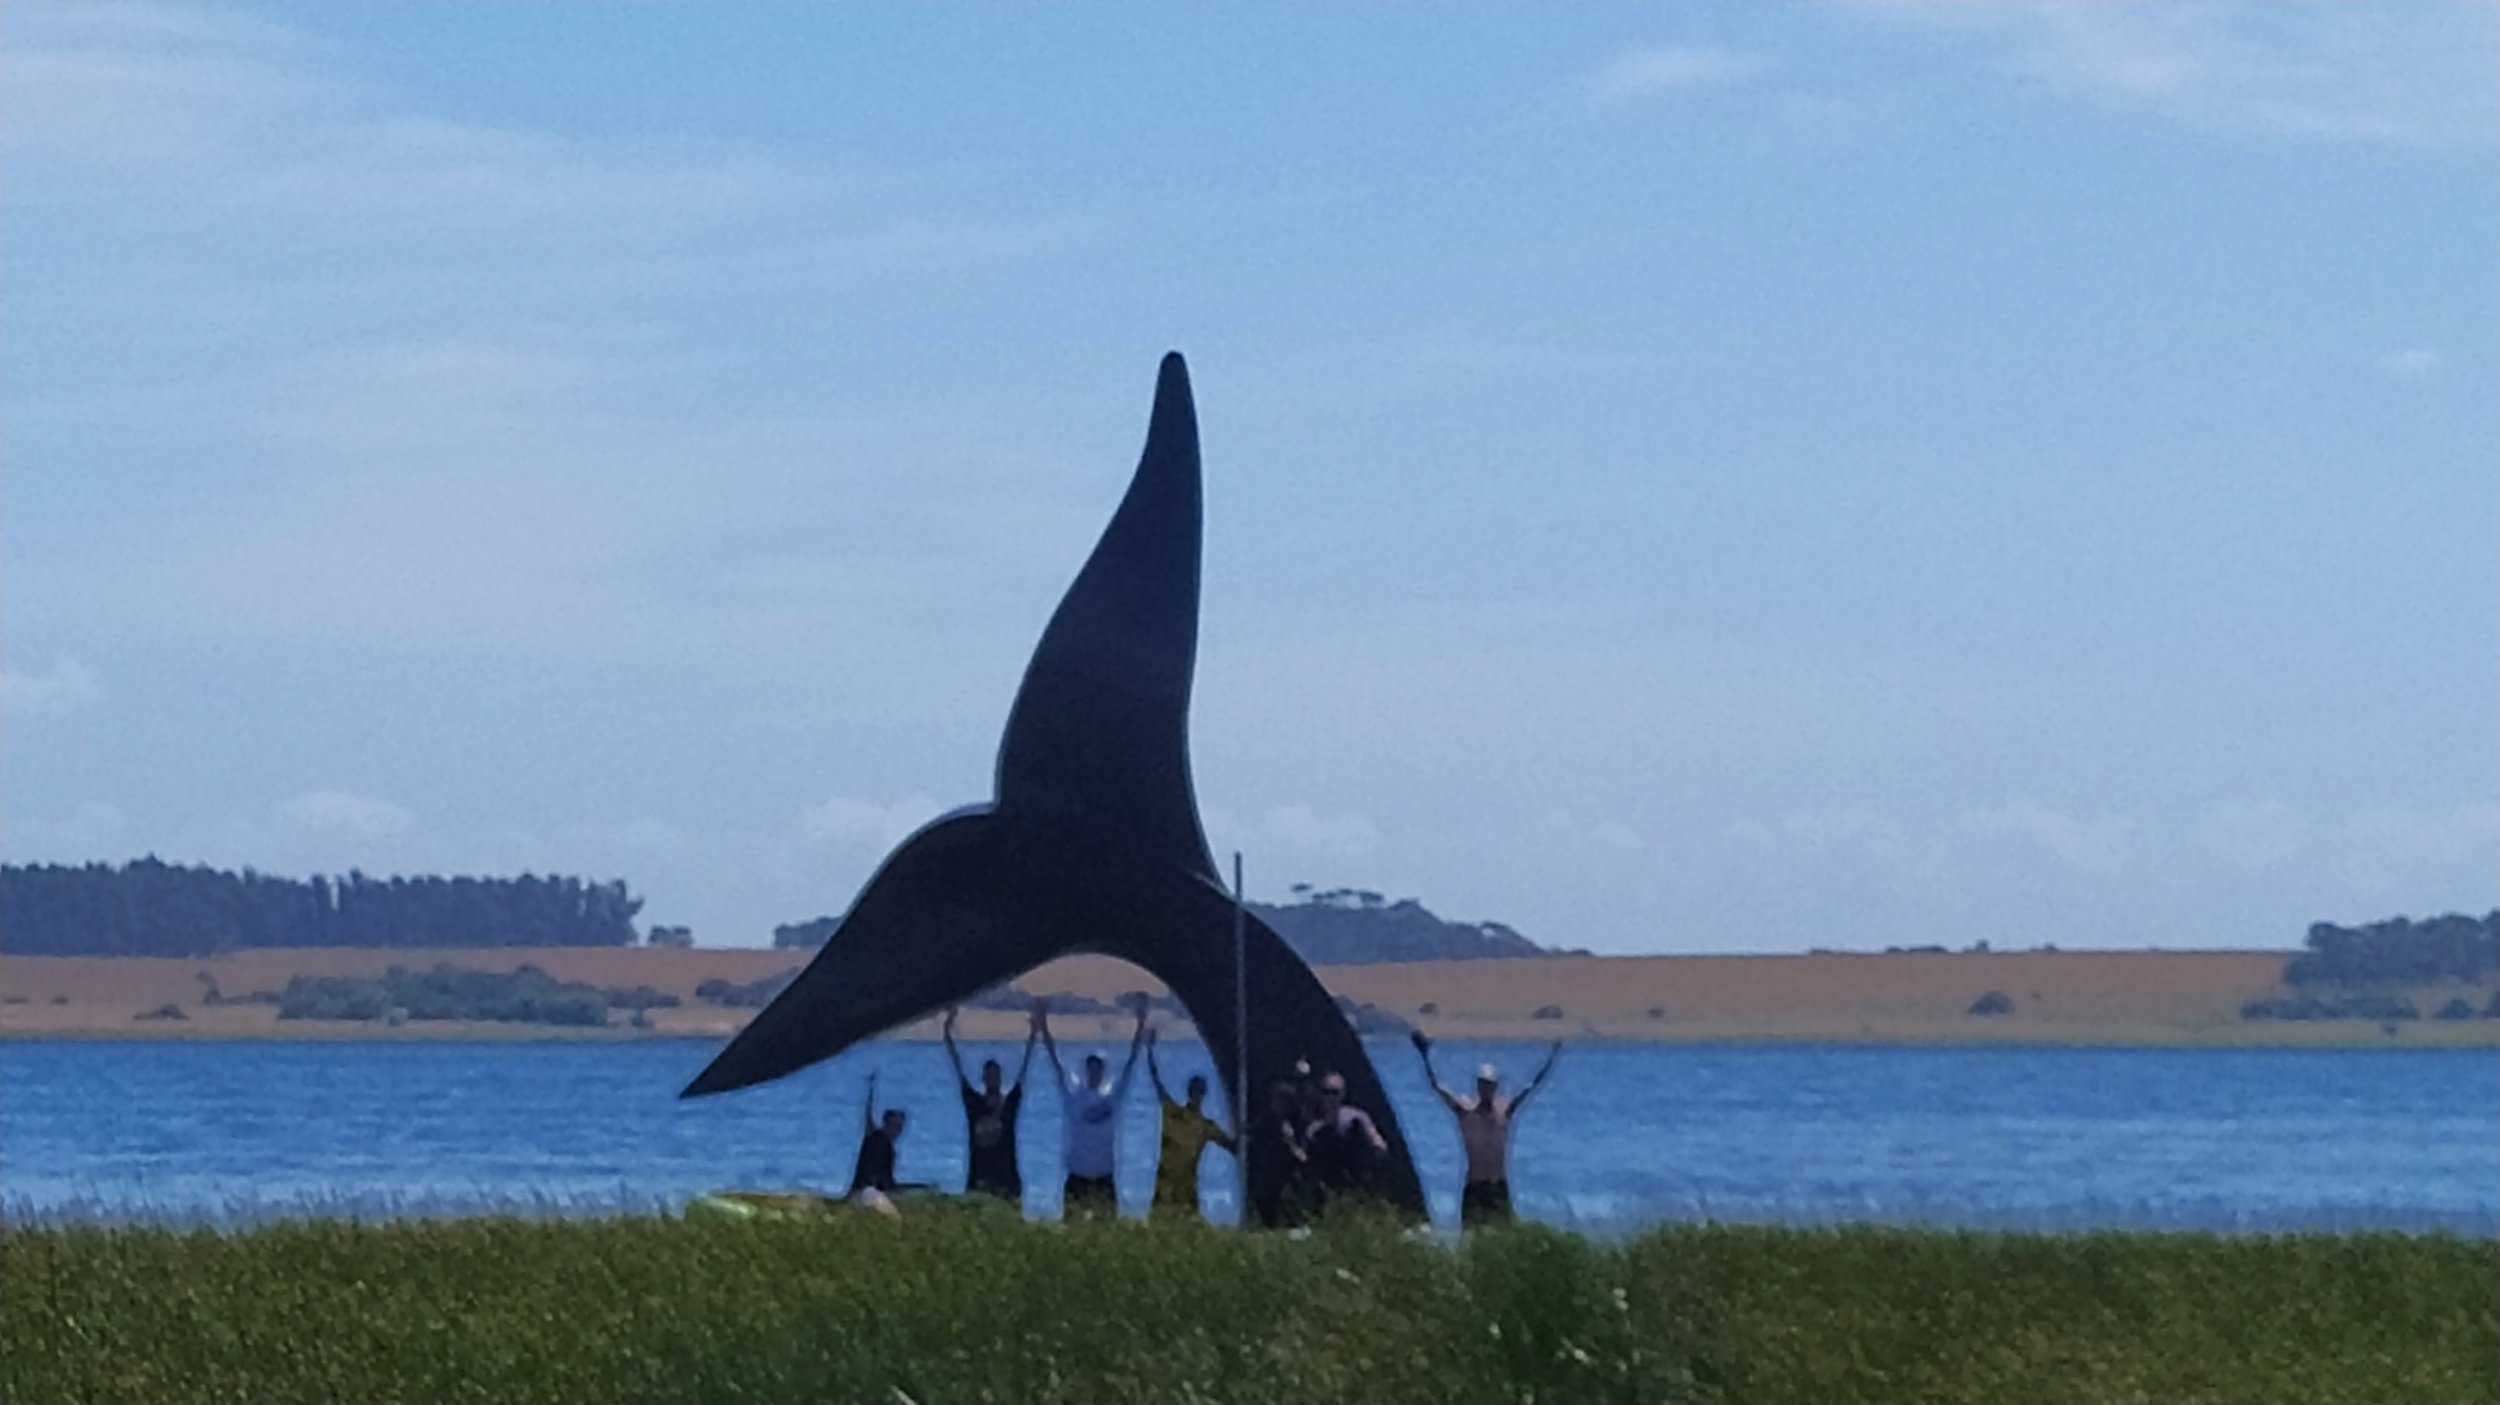 instalando escultura monumental de cola de ballena en el agua, obra de Mauro Arbiza